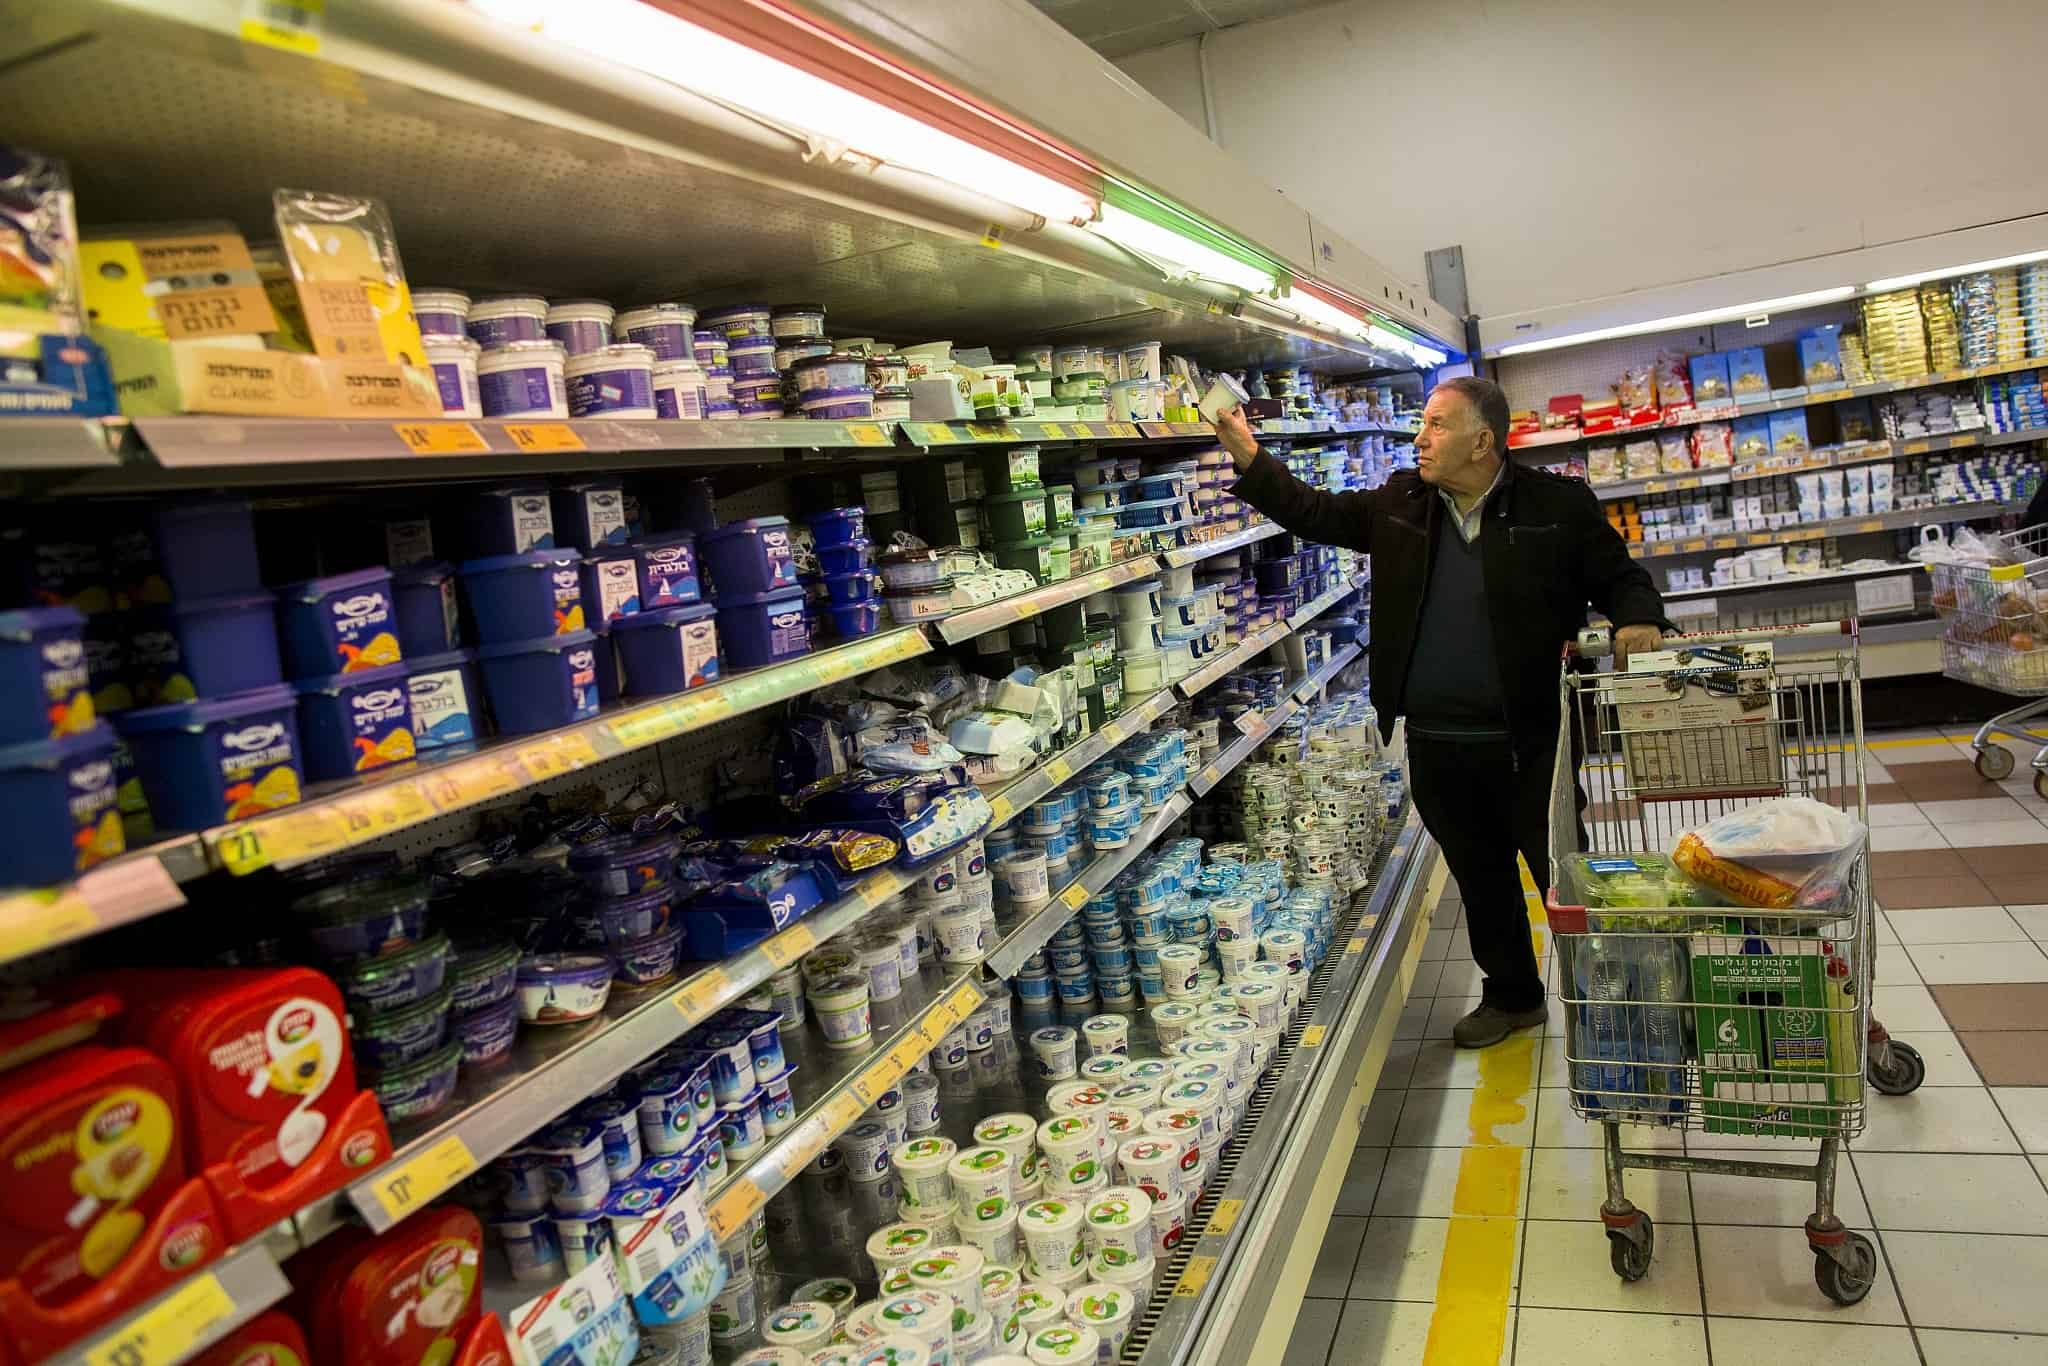 שופרסל: מייבאים חמאה זולה אבל לא לכל הסניפים (צילום: יונתן סינדל, פלאש 90)